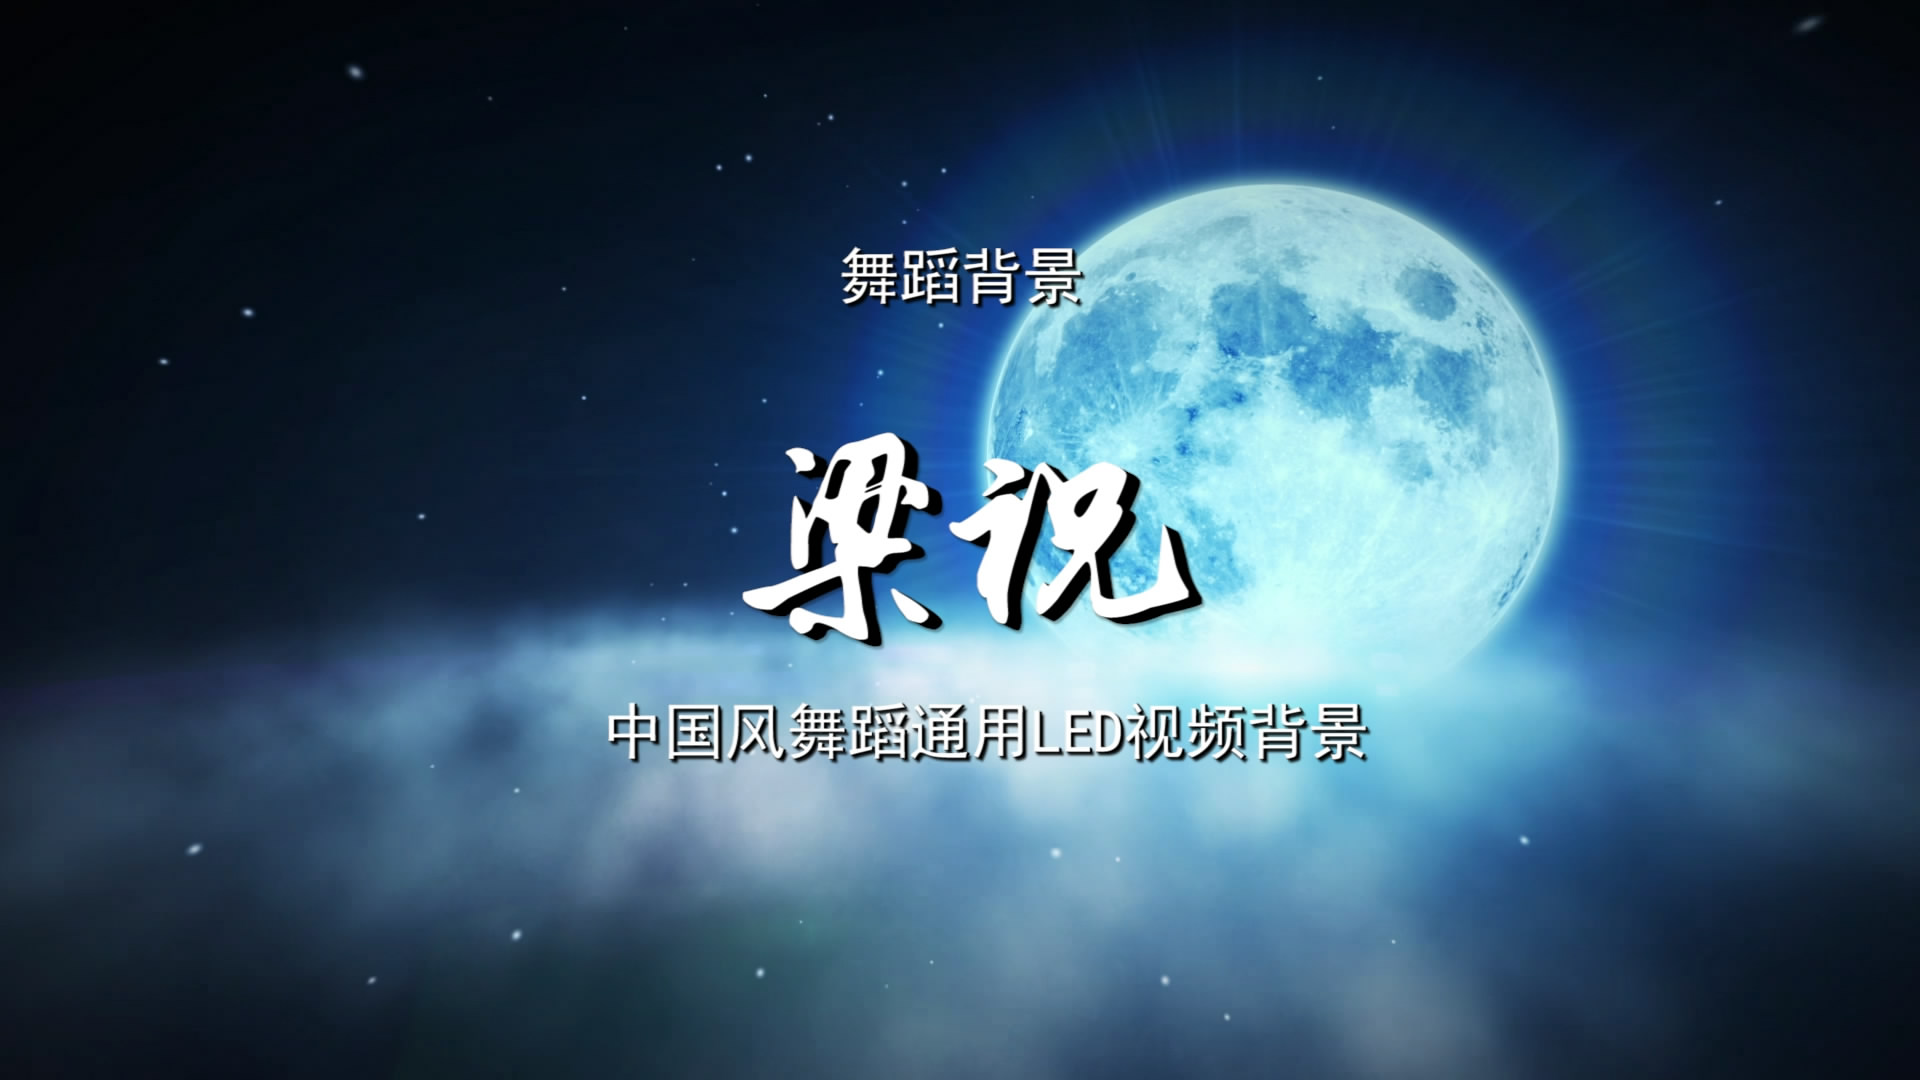 梁祝 古典中国风水墨歌舞晚会舞蹈节目LED背景通用大屏幕视频素材TV